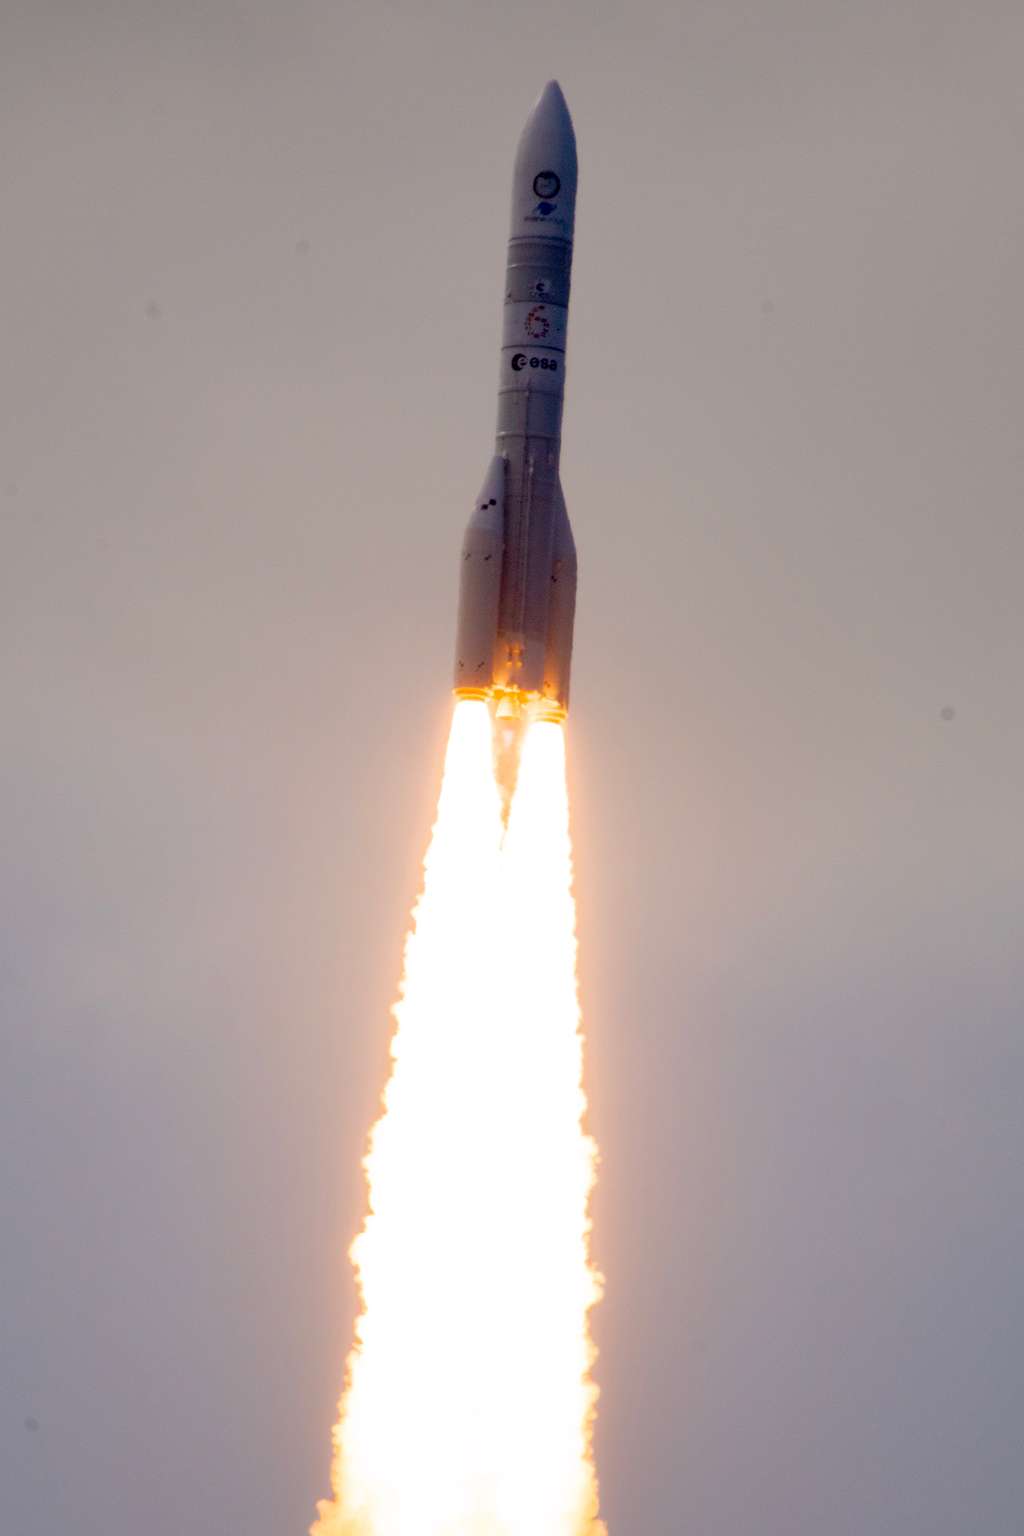 Premier vol d'Ariane 6. Alors que les moteurs cryogéniques du nouveau lanceur européen utilisent actuellement un mélange d'oxygène et d'hydrogène liquides pour le Vulcain de l'étage principal et le Vinci de l'étage supérieur, la prochaine génération de propulsion cryogénique utilisera le méthane comme ergol. © ESA, M. Pédoussaut